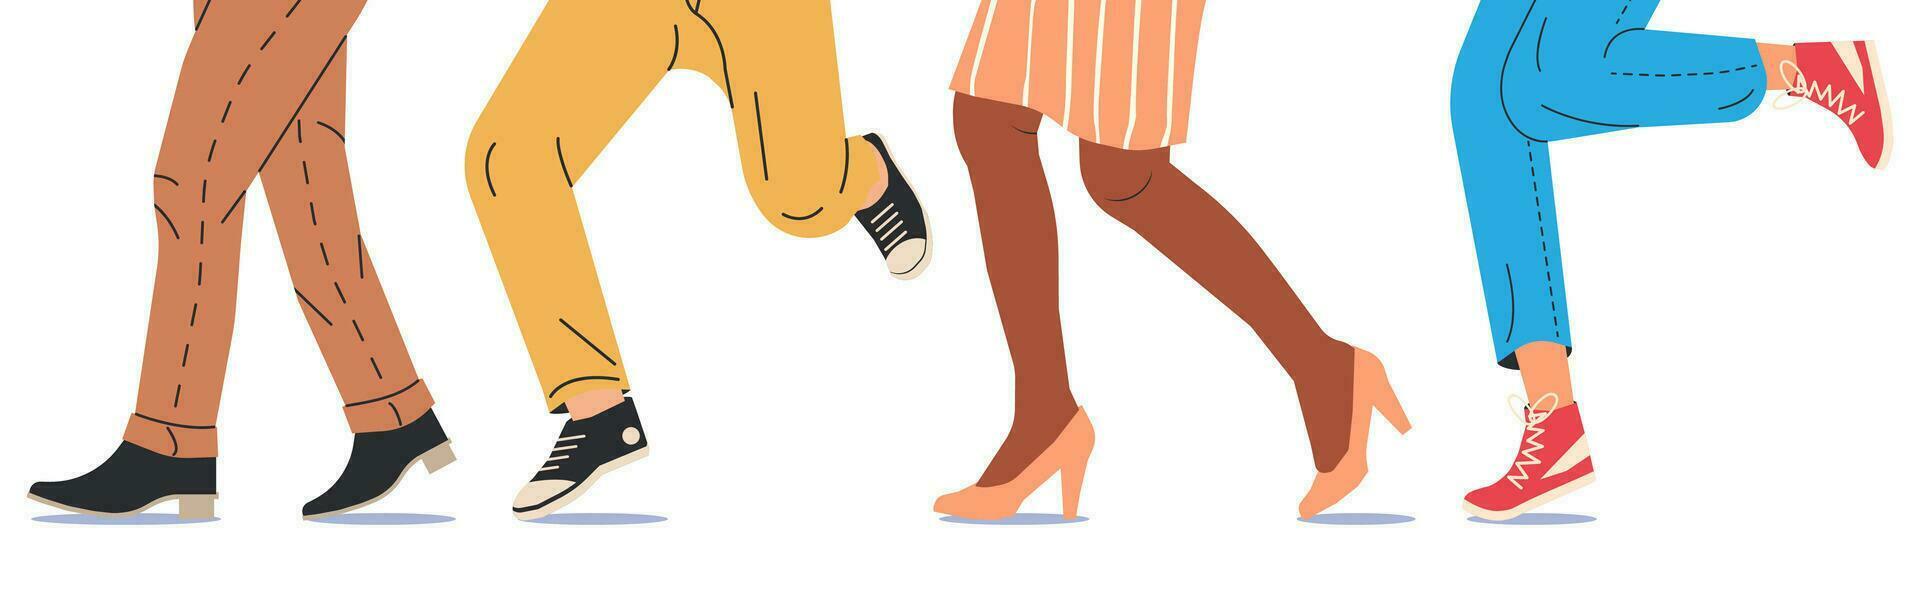 persone a piedi nel moderno scarpe. impostato di vario femmina e maschio scarpe con piedi. stivali, scarpe da ginnastica, tacchi. ragazza e ragazzo calzature. diverso donna e uomo scarpe. cartone animato piatto vettore illustrazione